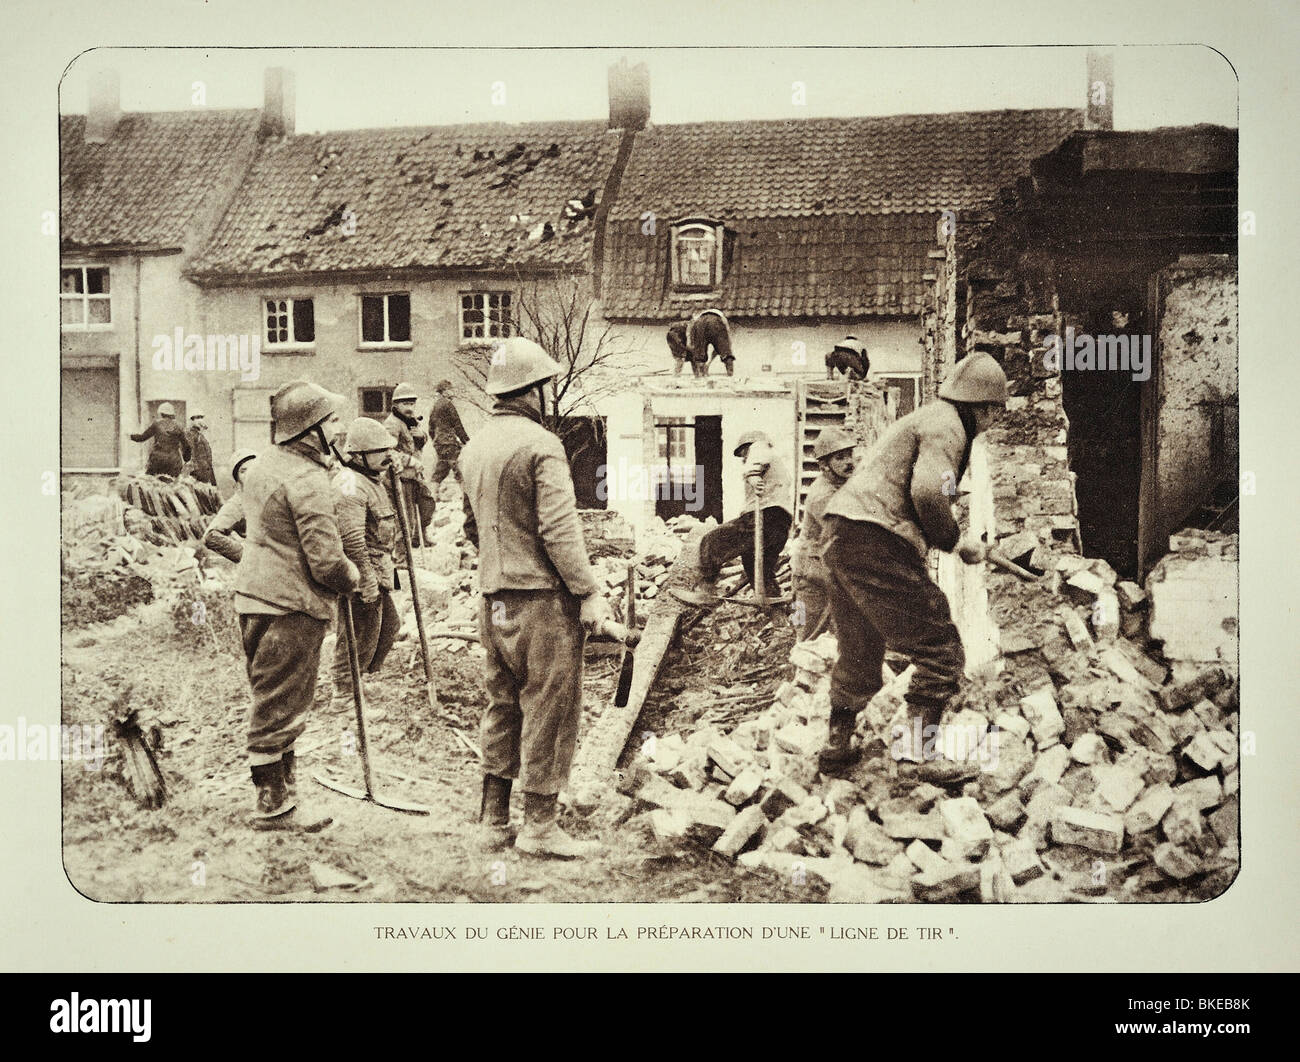 La PREMIÈRE GUERRE MONDIALE, les ingénieurs militaires belges la préparation de maisons en ruine pour l'artillerie en Flandre occidentale pendant la Première Guerre mondiale, la Belgique Banque D'Images